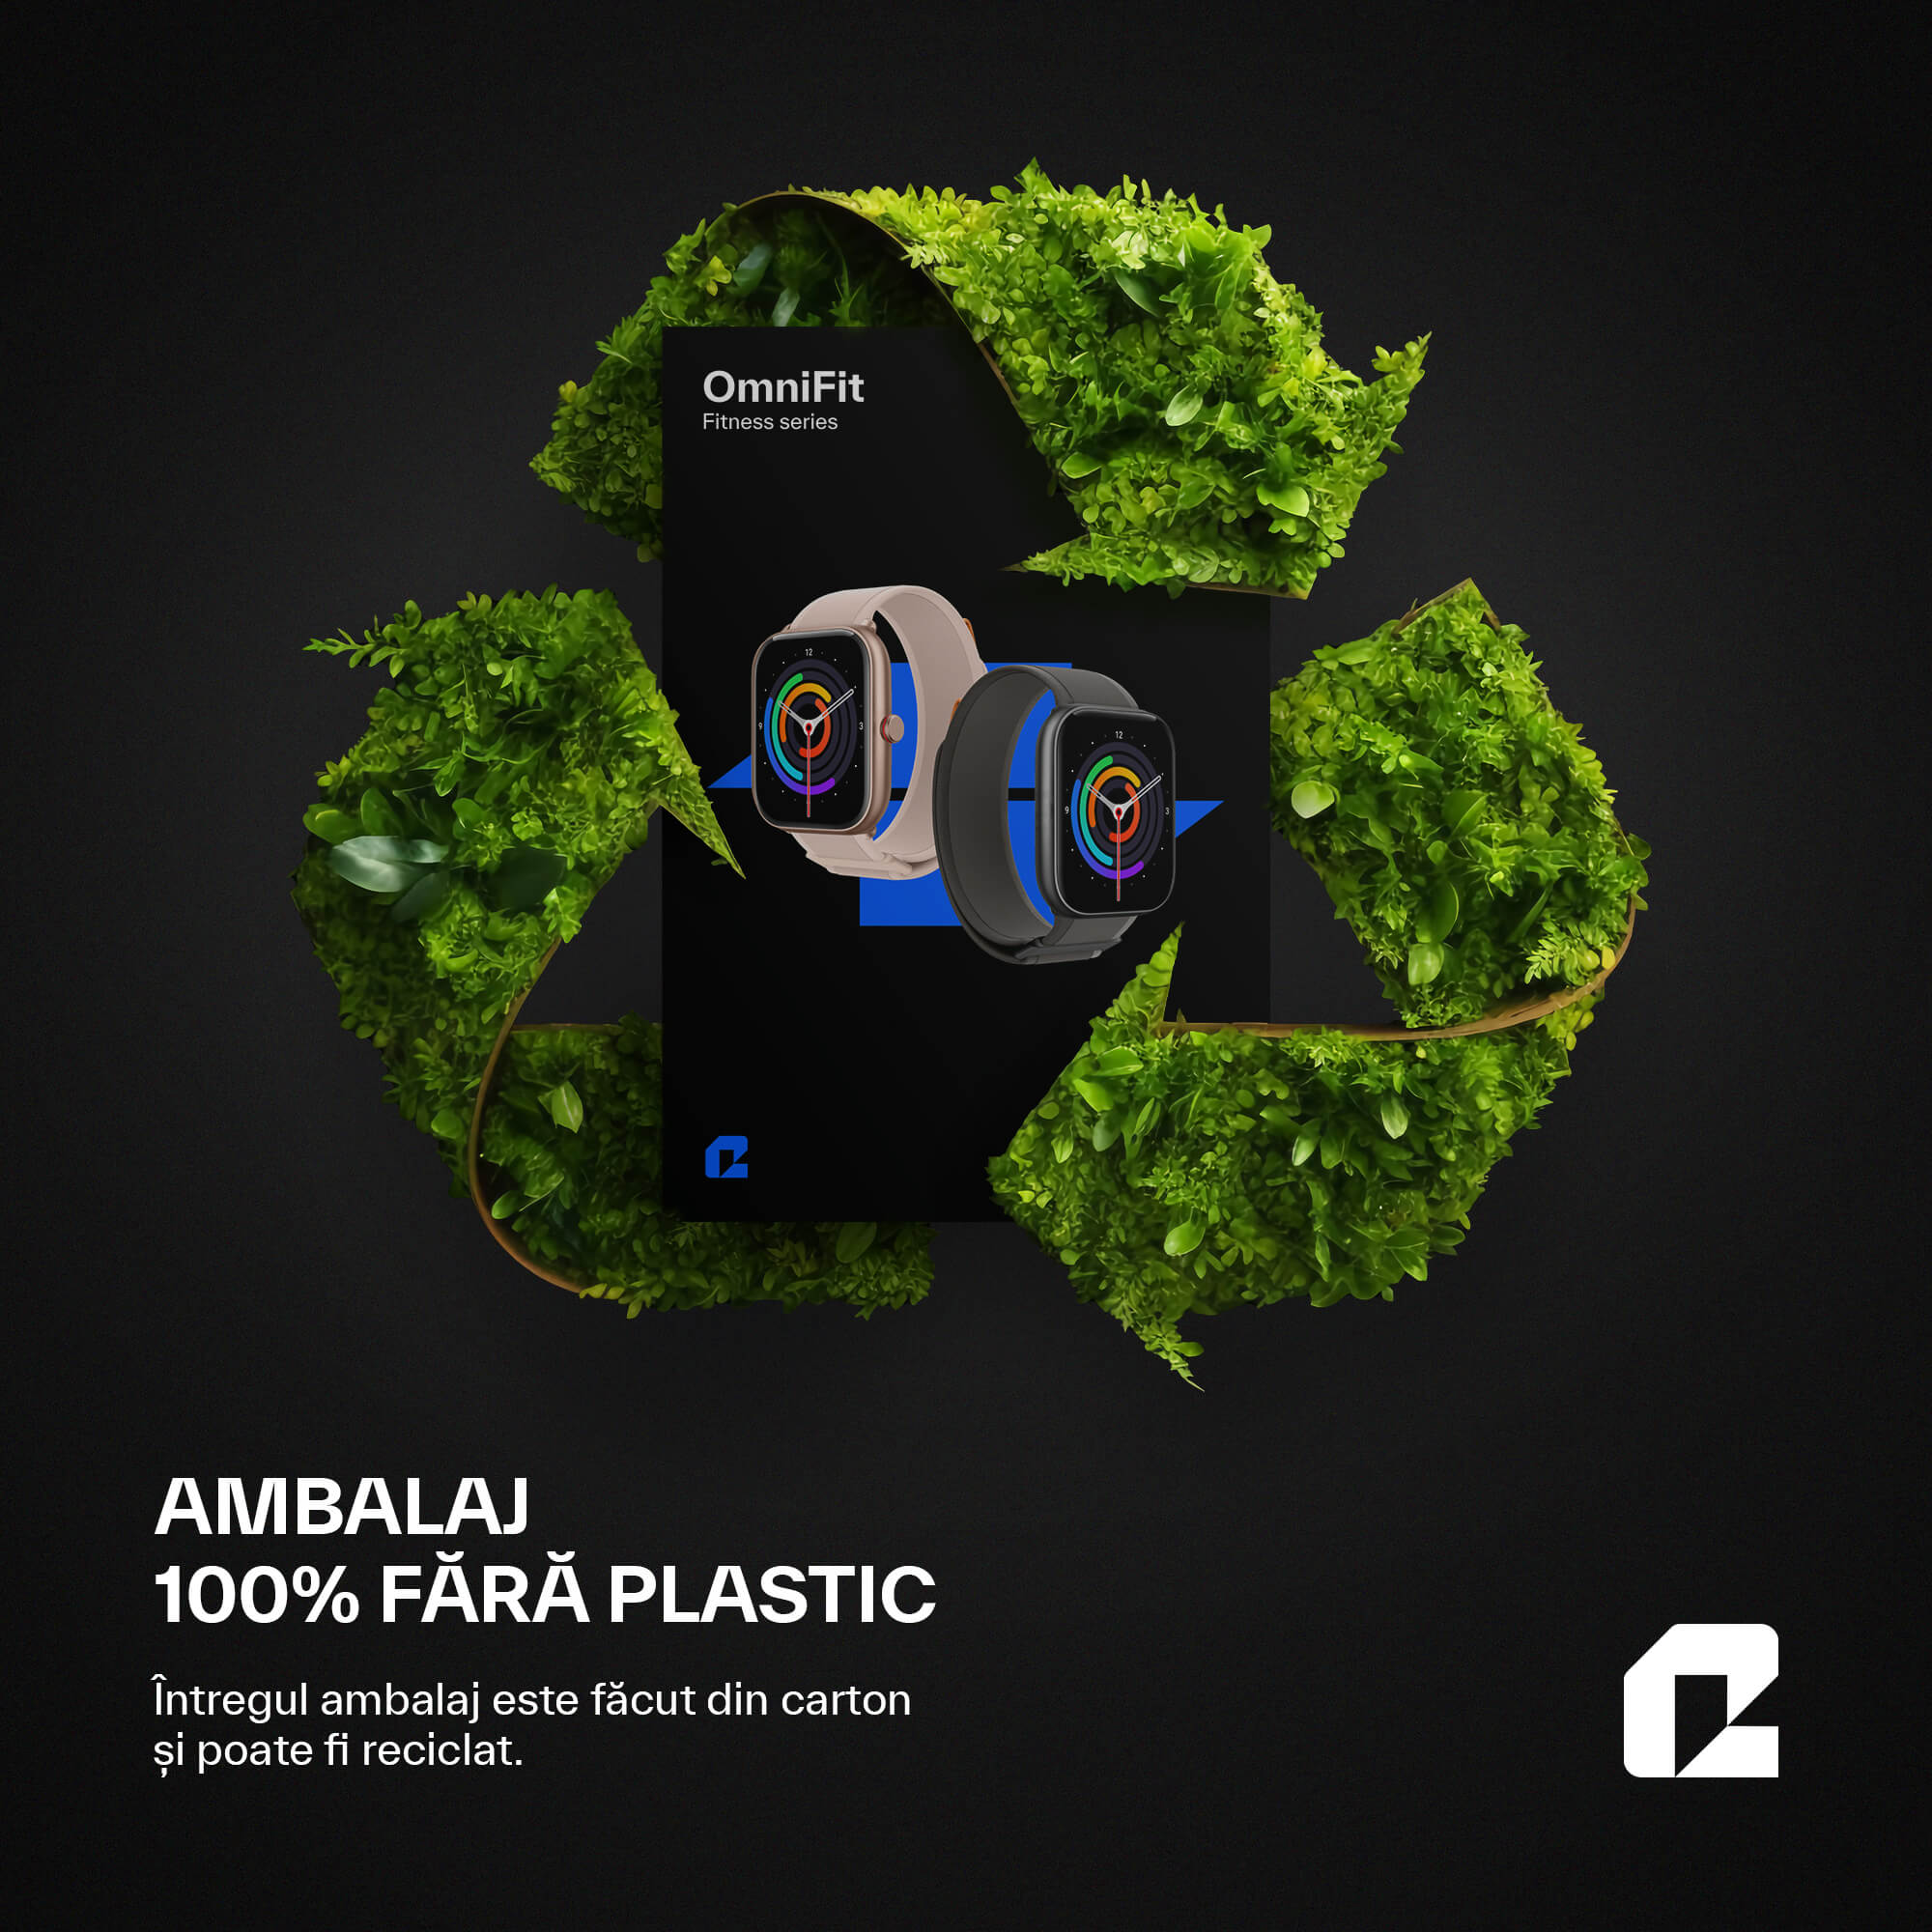 OmniFit smartwatch cu ambalaj reciclabil